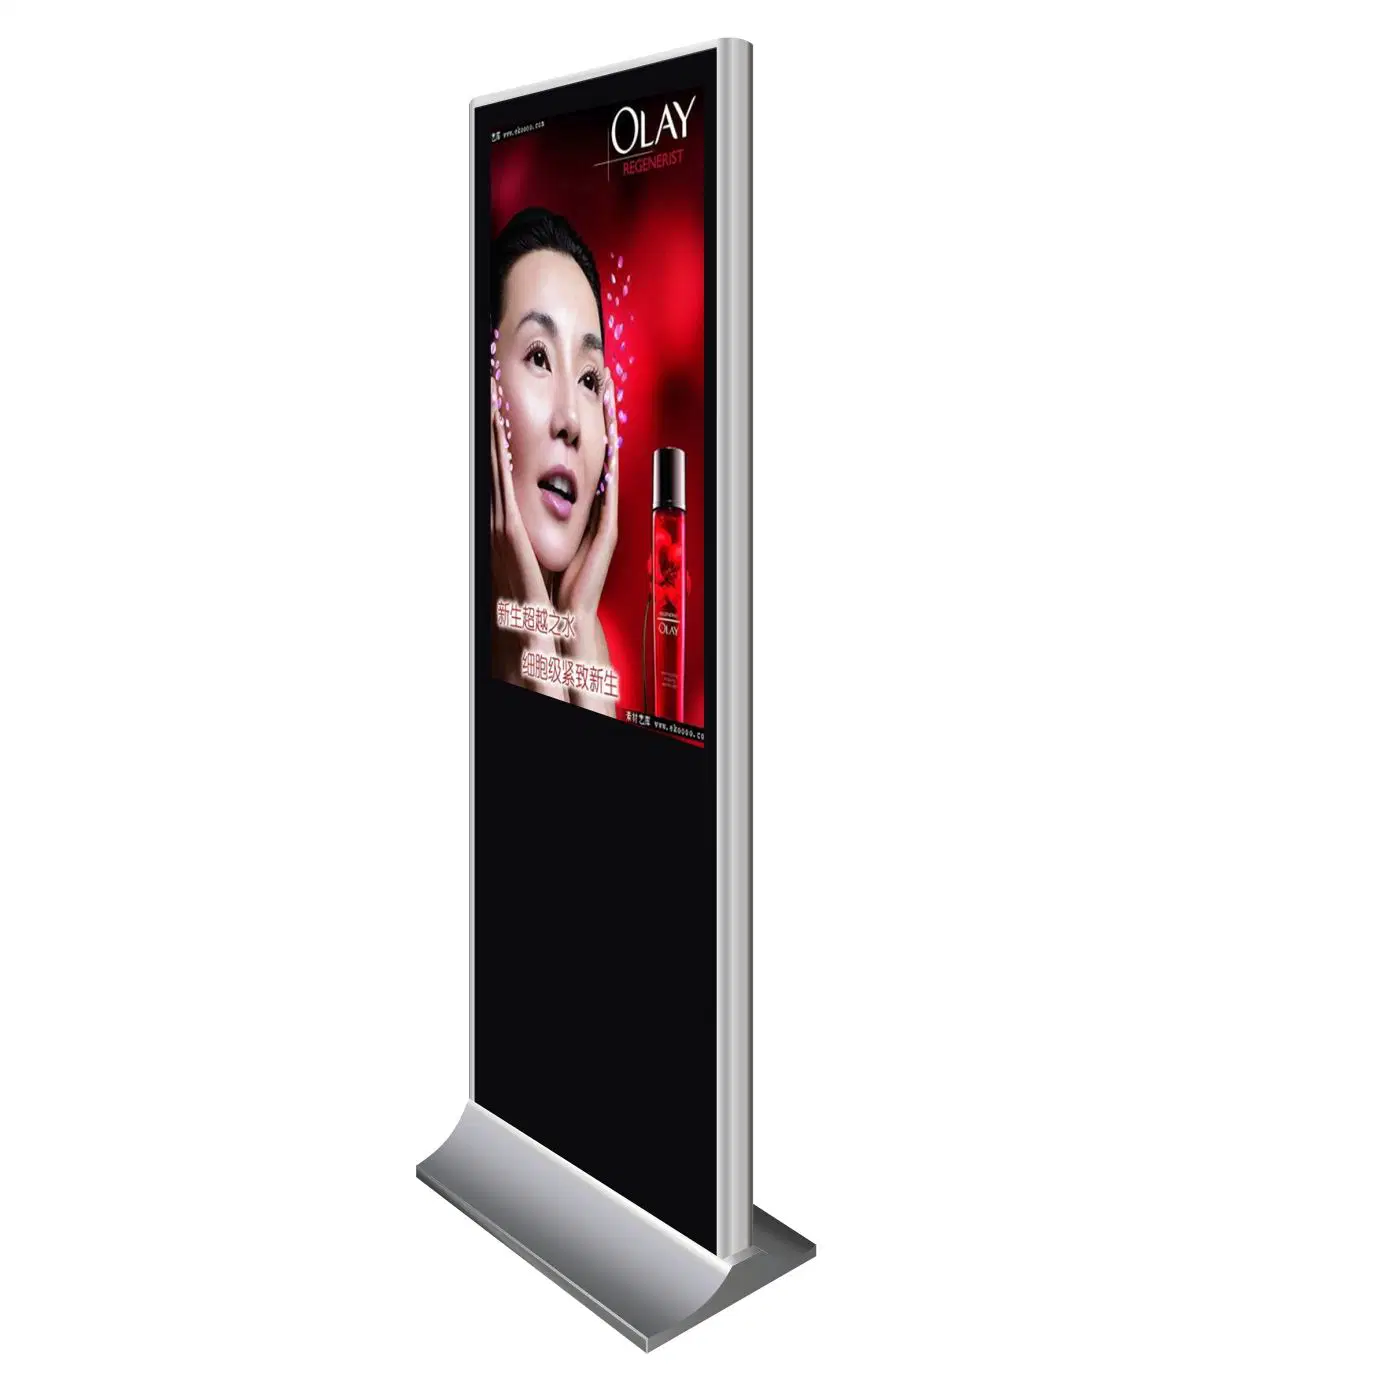 LCD-Fernseher mit Touchscreen, Standfläche, interaktiver digitaler Beschilderung Bildschirme Kiosk Werbung Anzeige für Werbung